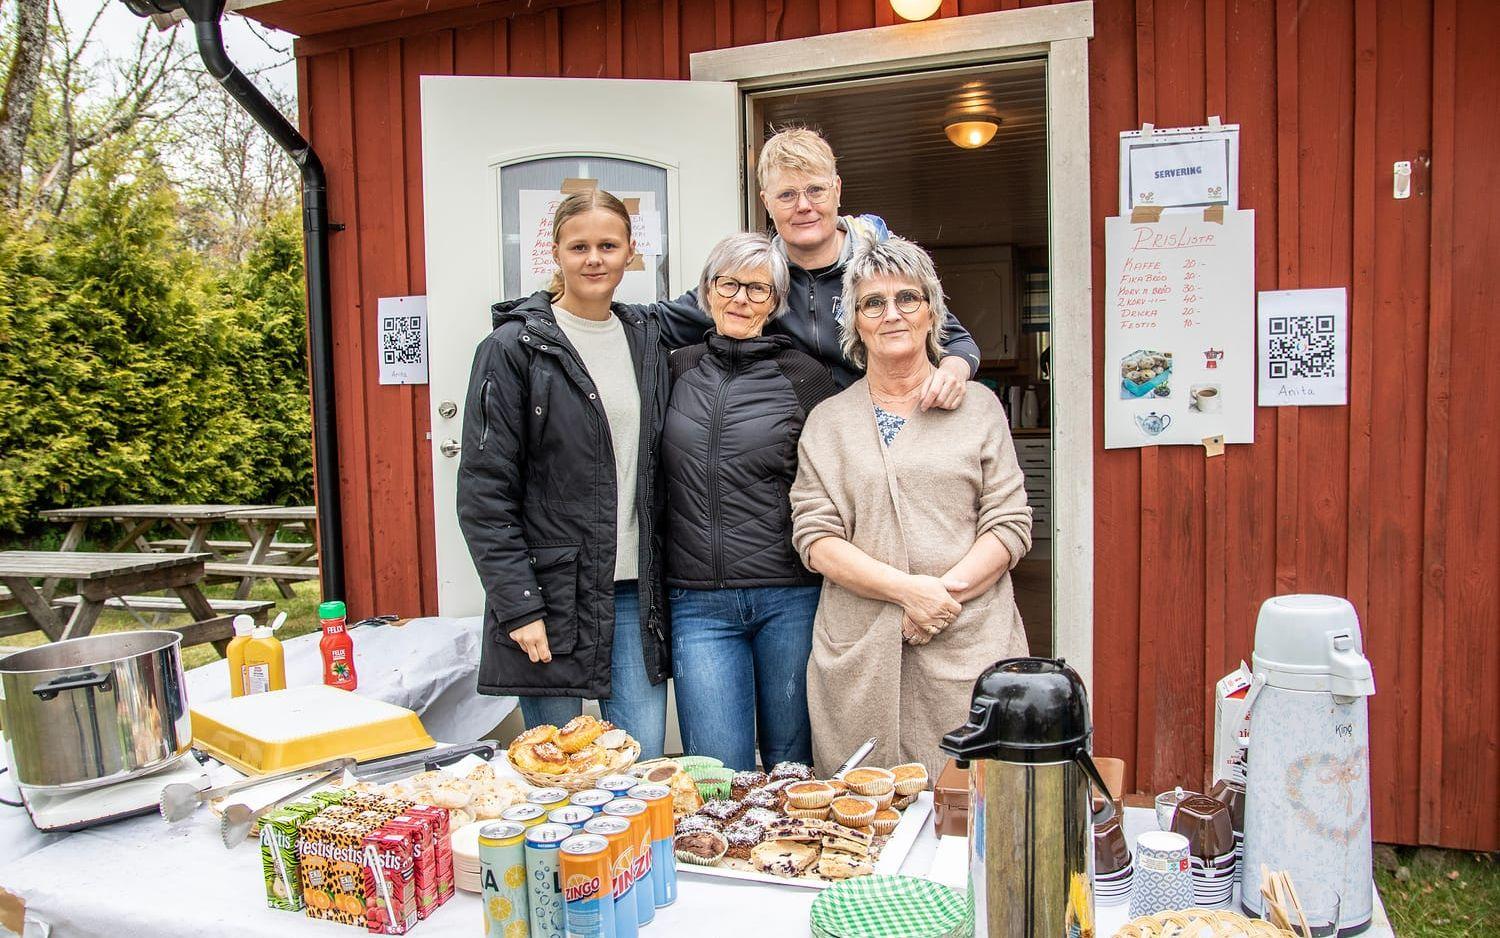 Kökspersonalen hade fullt upp. Från vänster: Nicolina Klenfeldt, Anita Olsson, Ann-Charlotte Blomsten. Bak står Lena Andersson.